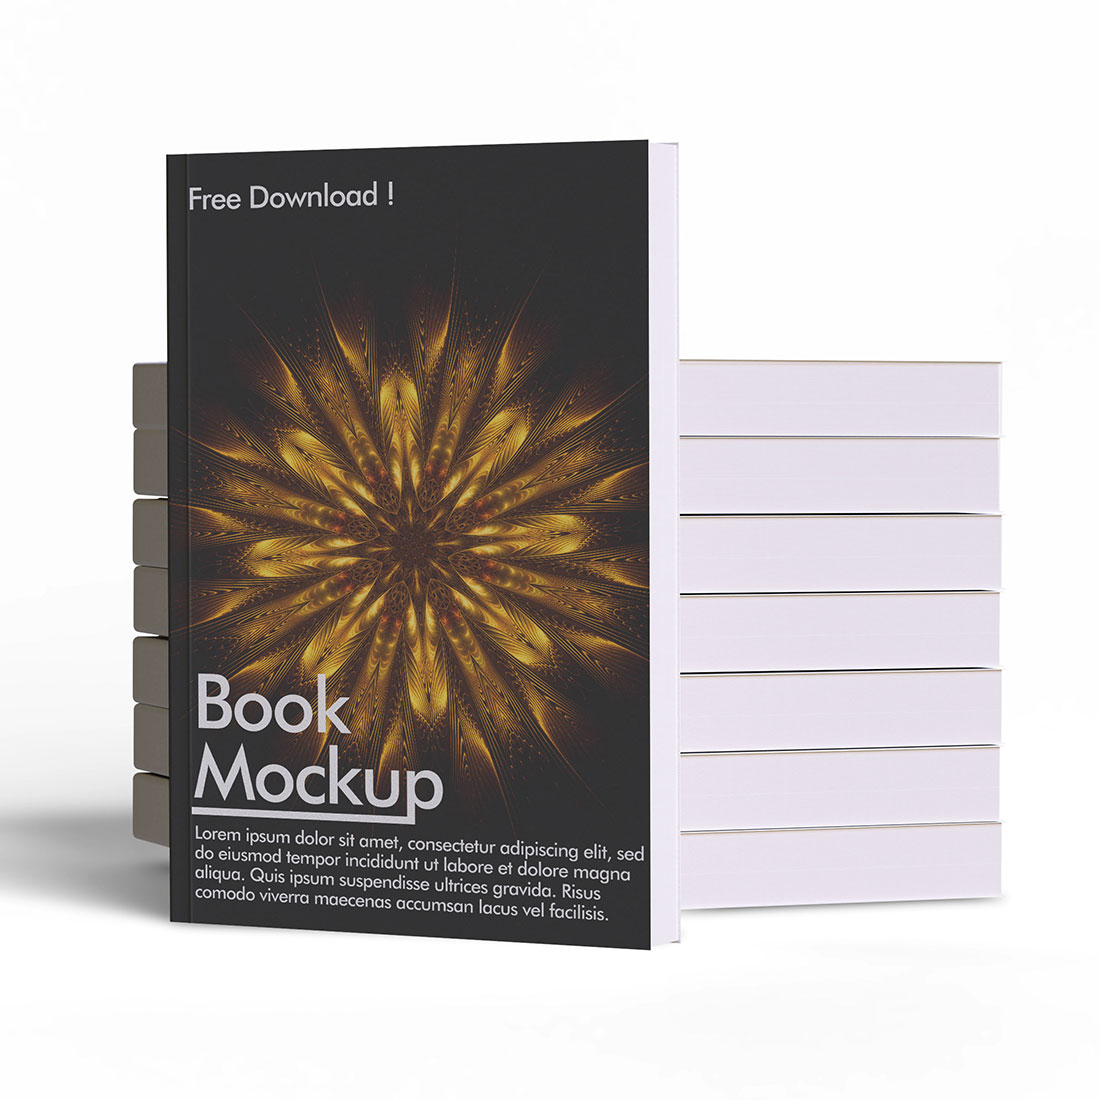 Book Mockup Bundles Full Editable preview image.